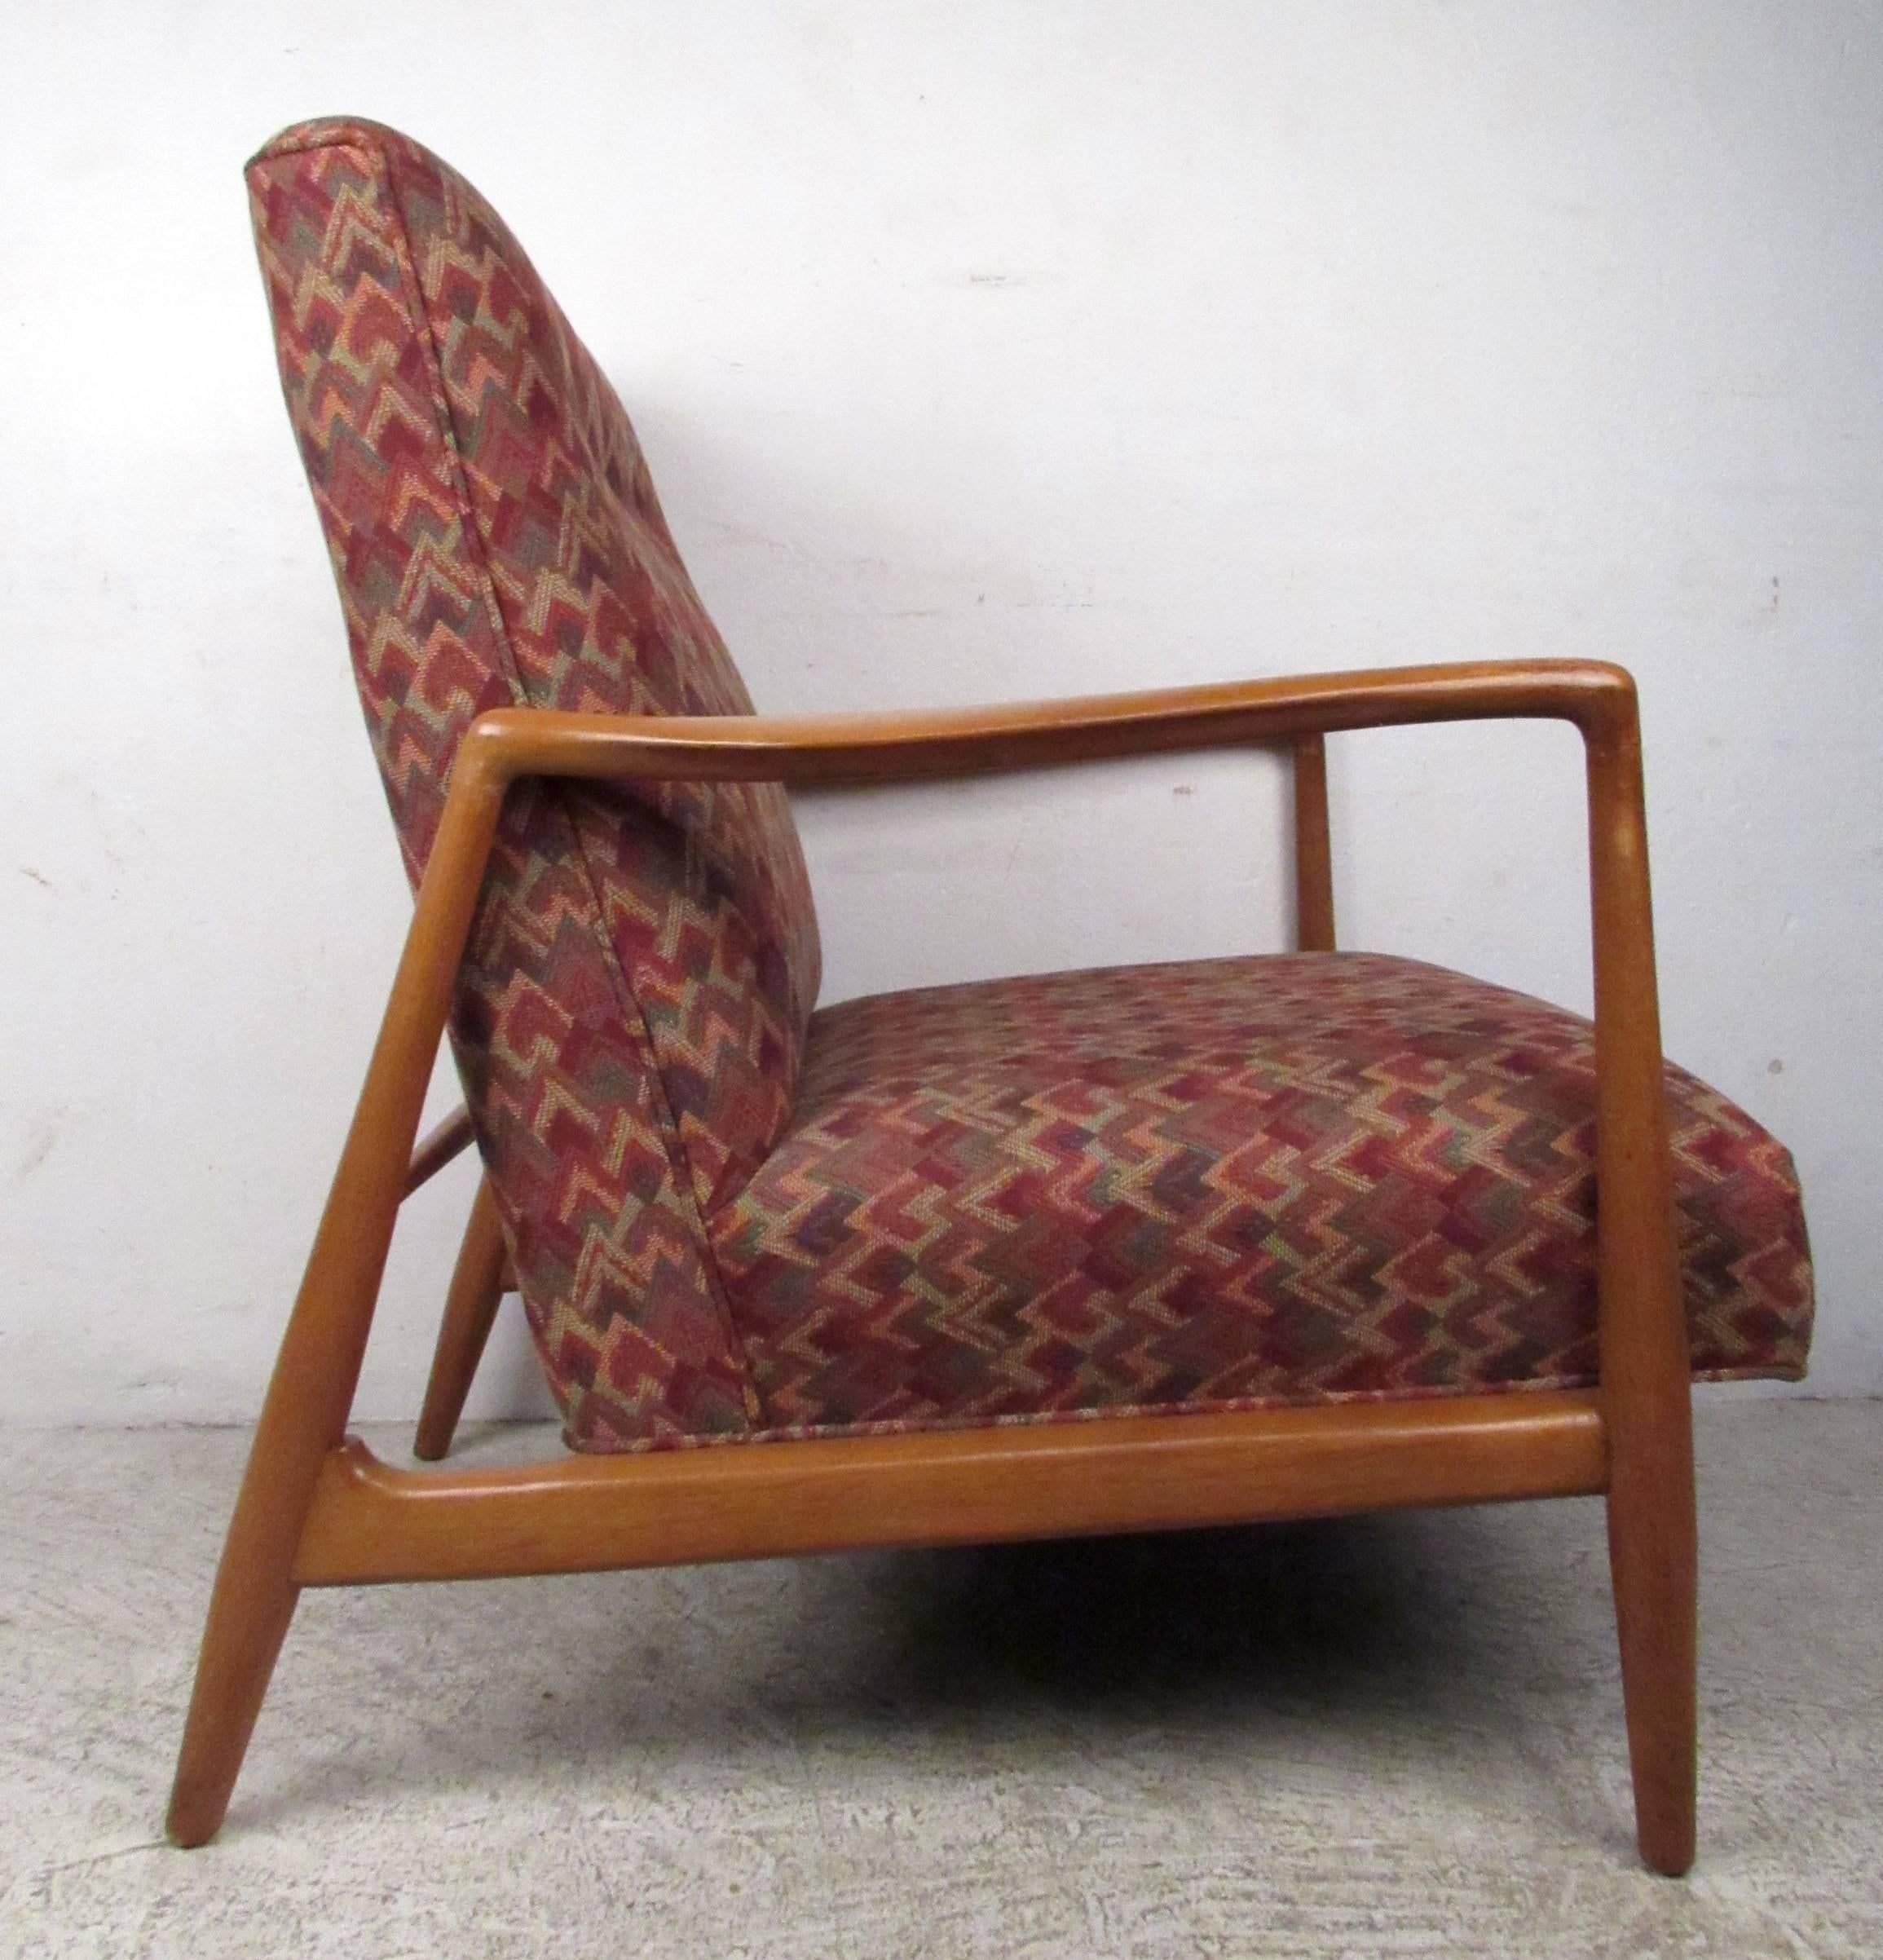 Chaise longue vintage-moderne avec pieds et accoudoirs sculptés, assise et dossier rembourrés, conçue à la manière d'Adrian Pearsall.

Veuillez confirmer la localisation de l'article NY ou NJ avec le vendeur.